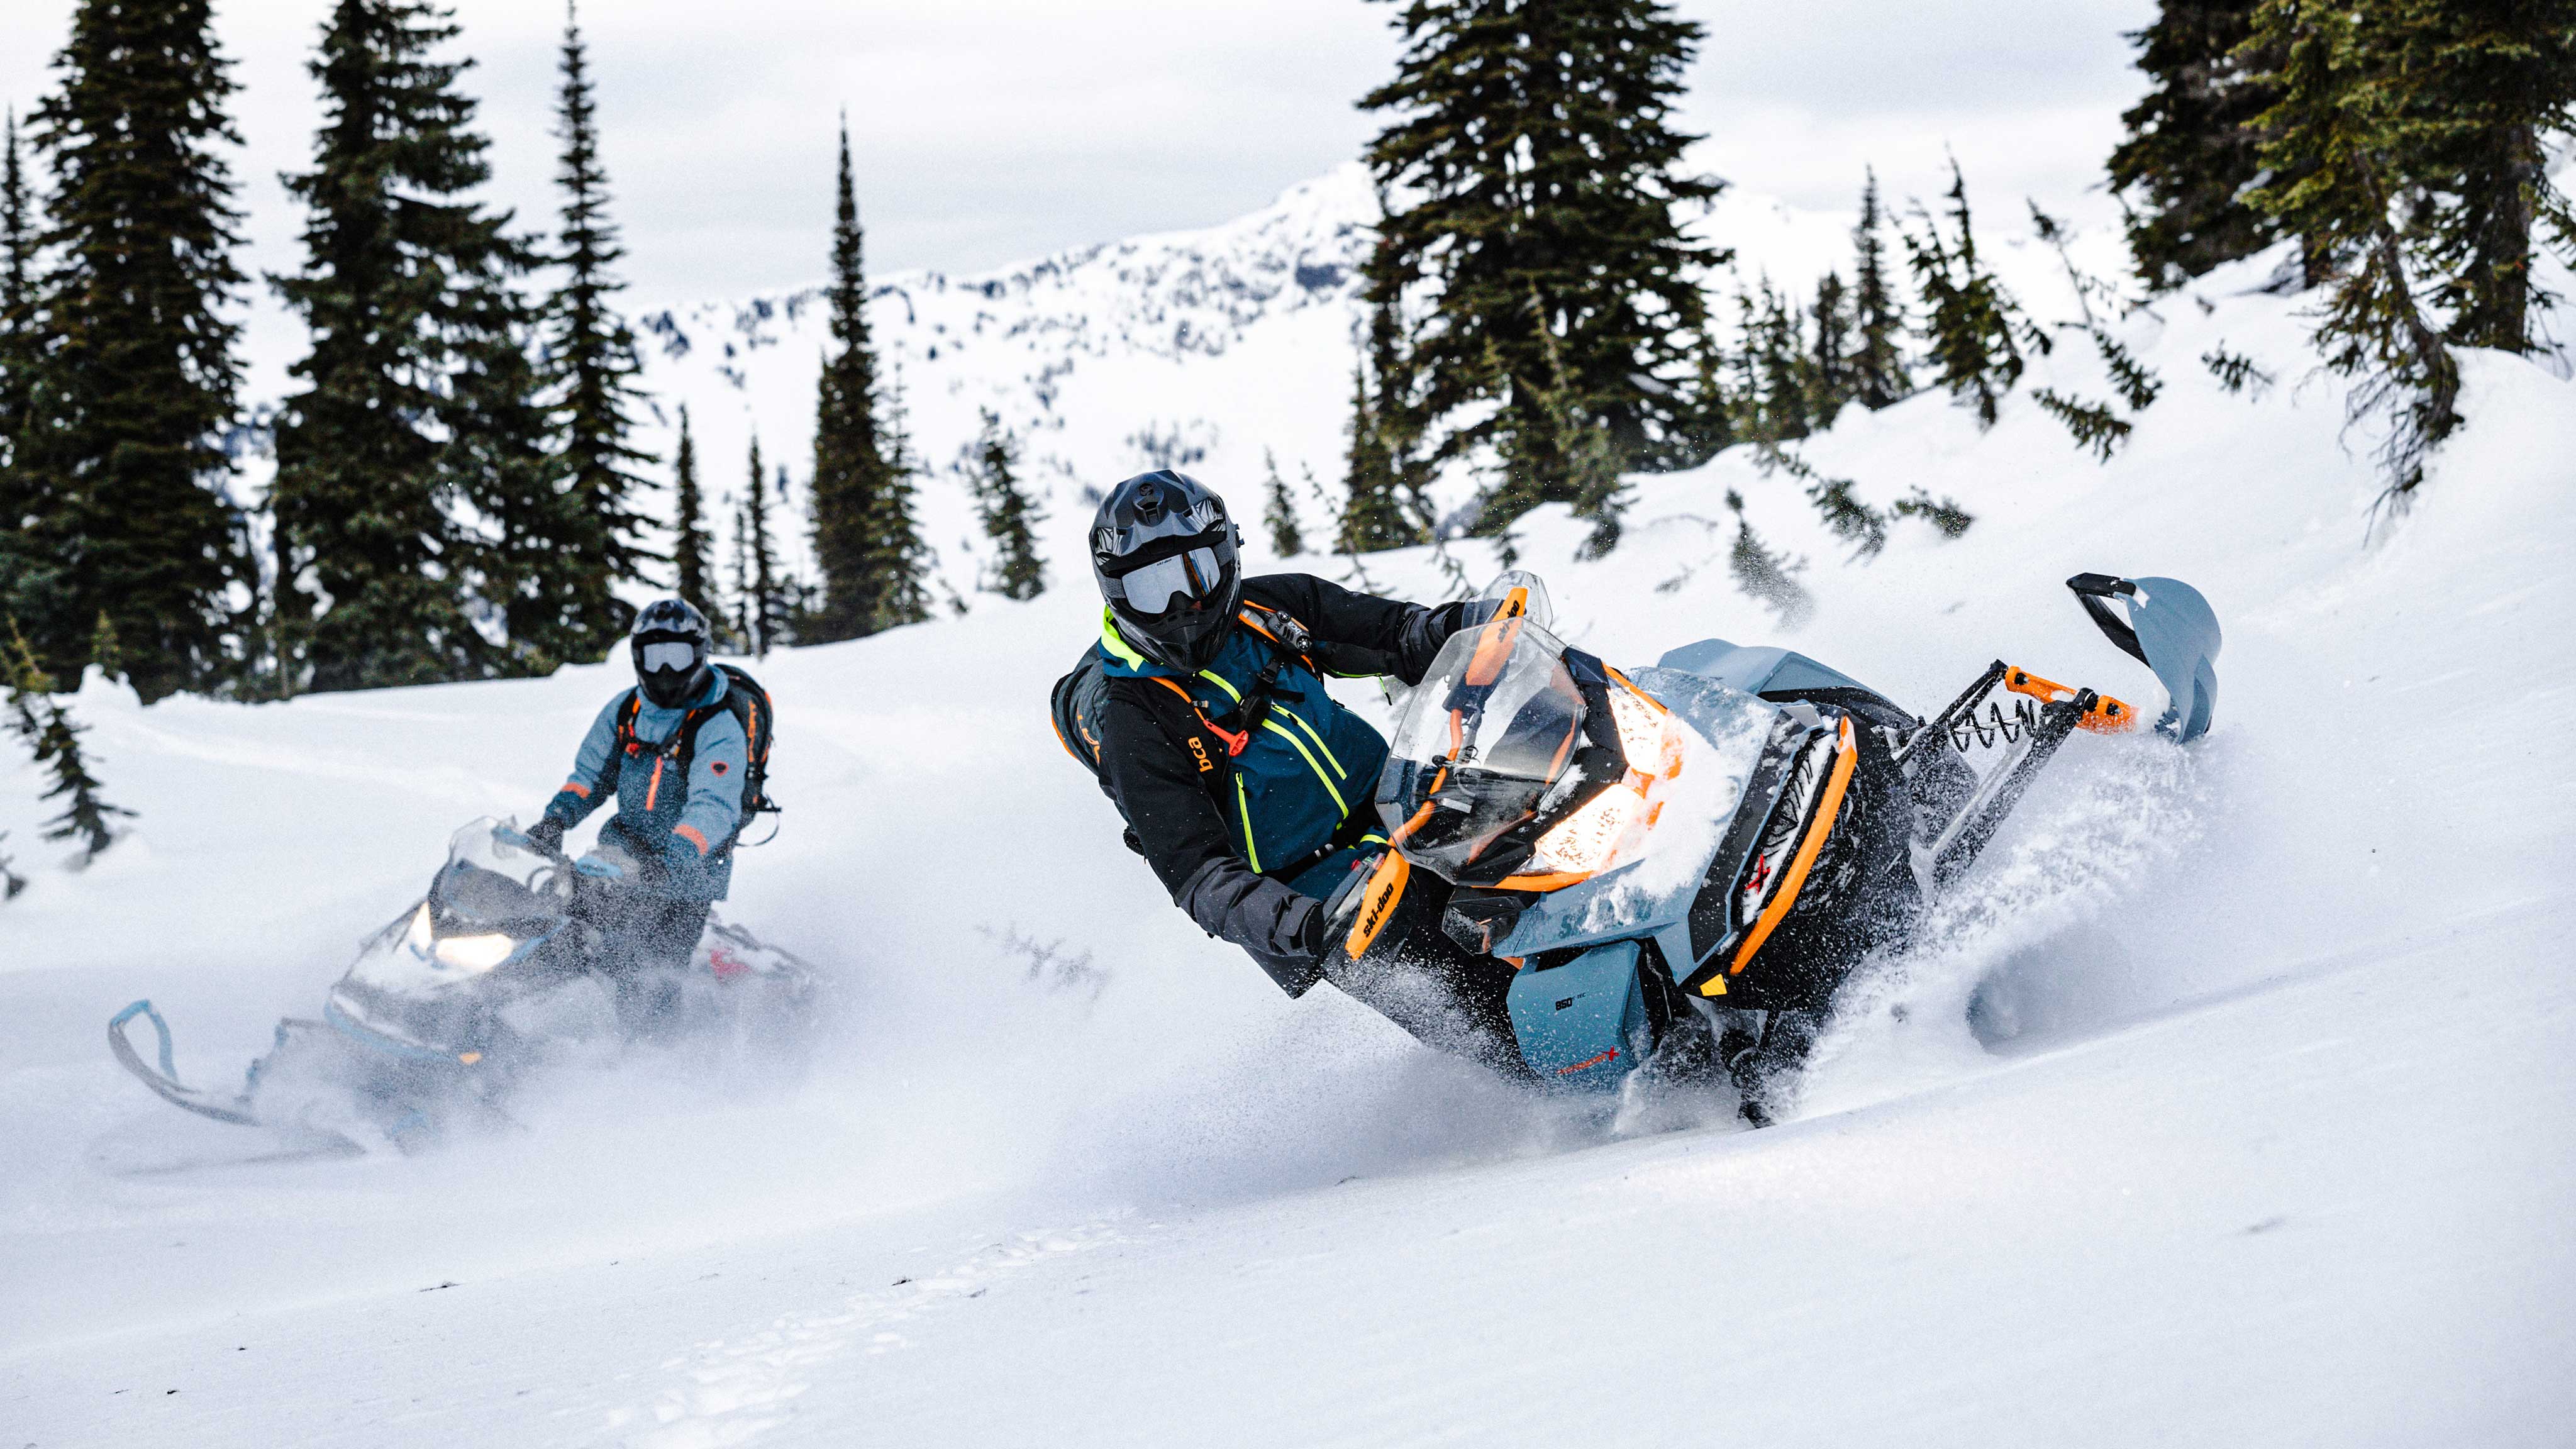 Men riding Ski-Doo snowmobiles